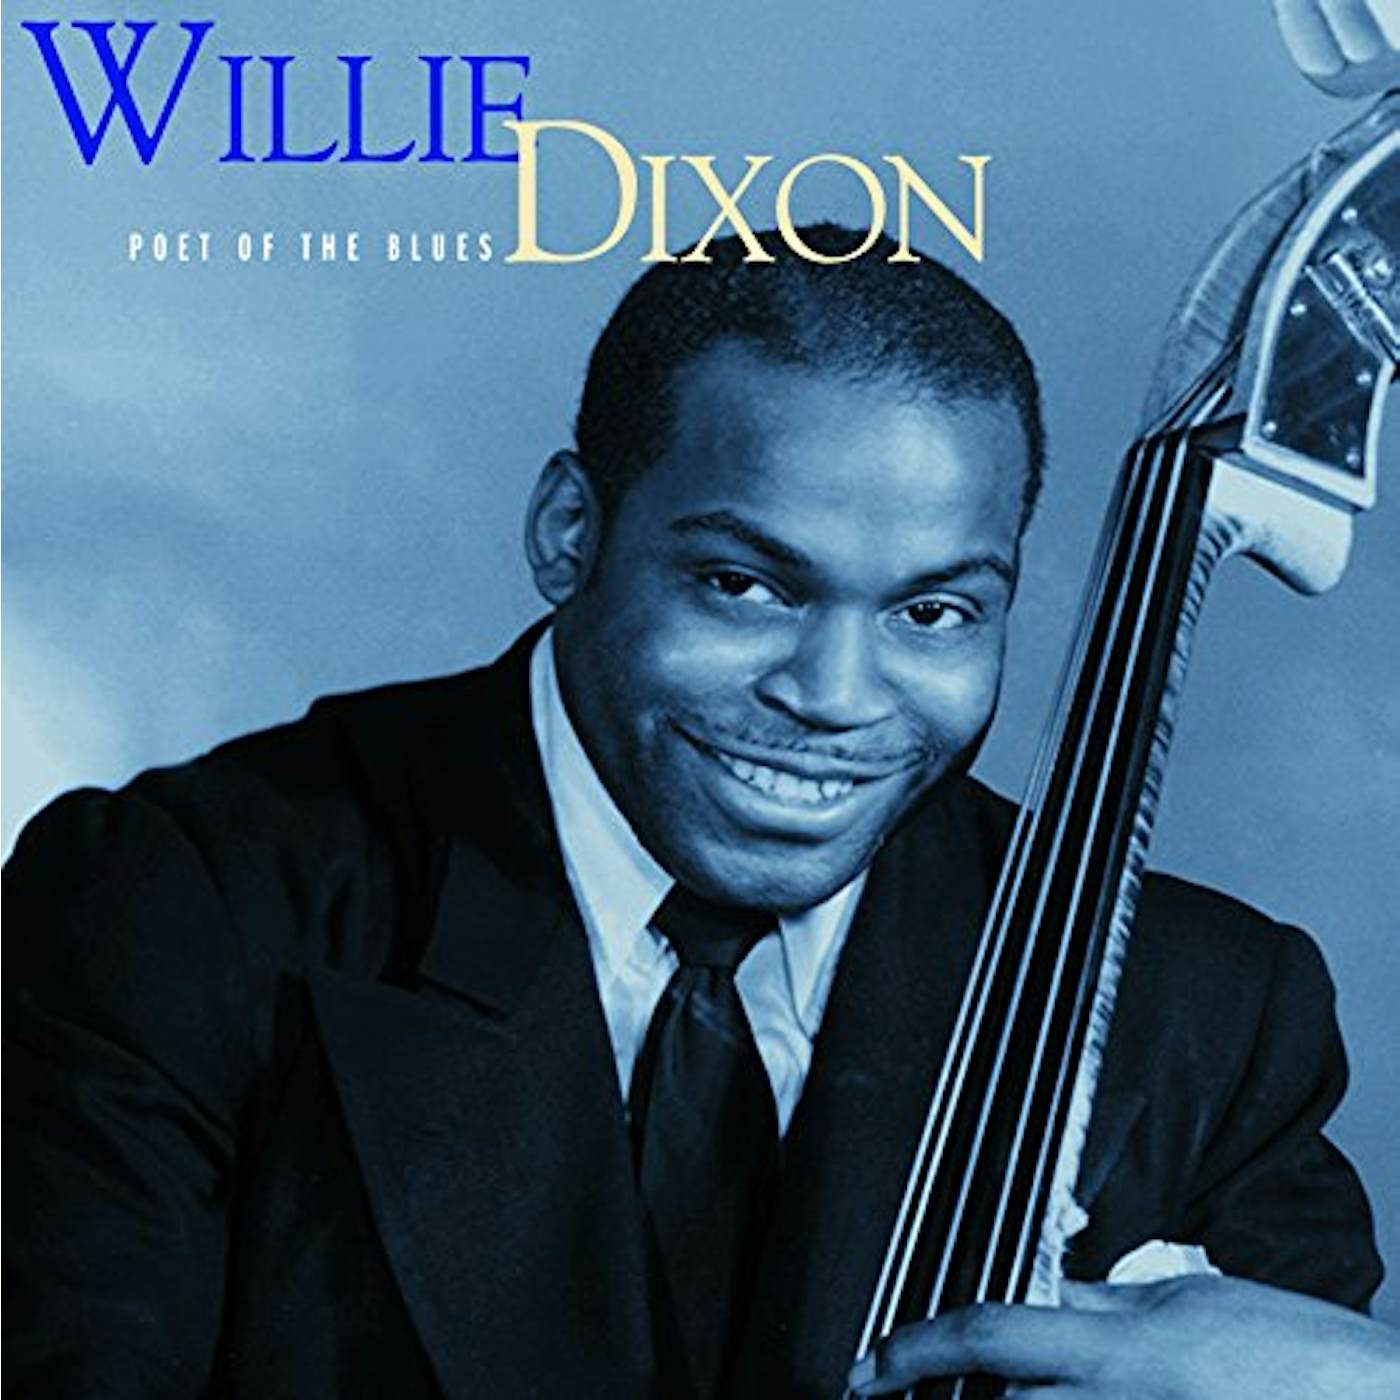 Willie Dixon Poet Of The Blues Vinyl Record